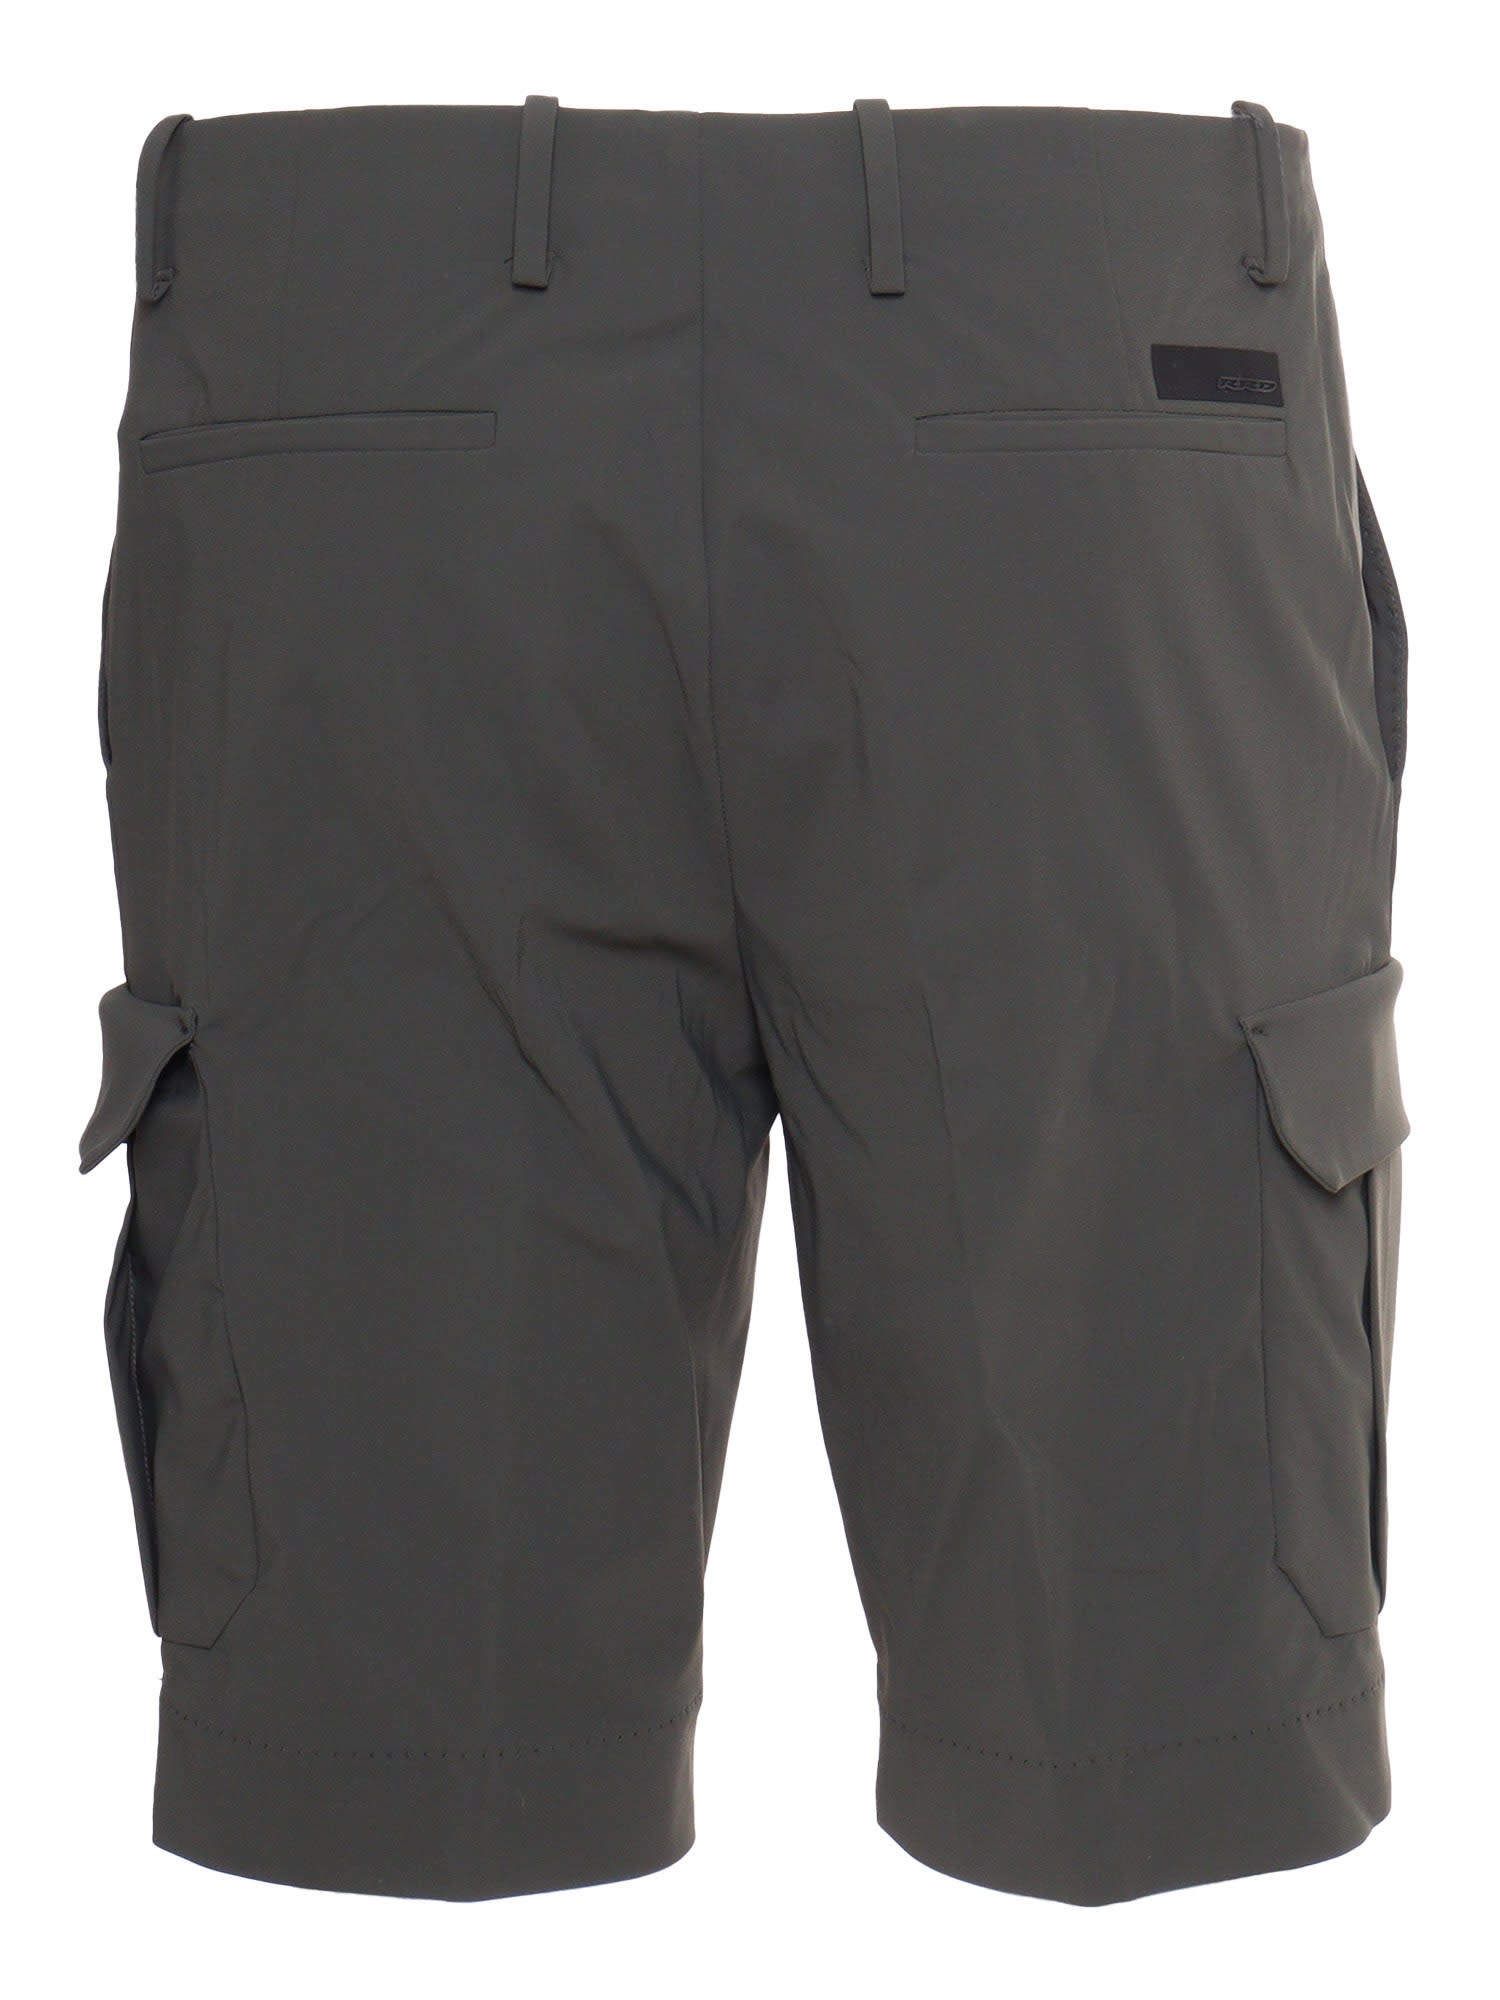 Shop Rrd - Roberto Ricci Design Military Green Cargo Shorts